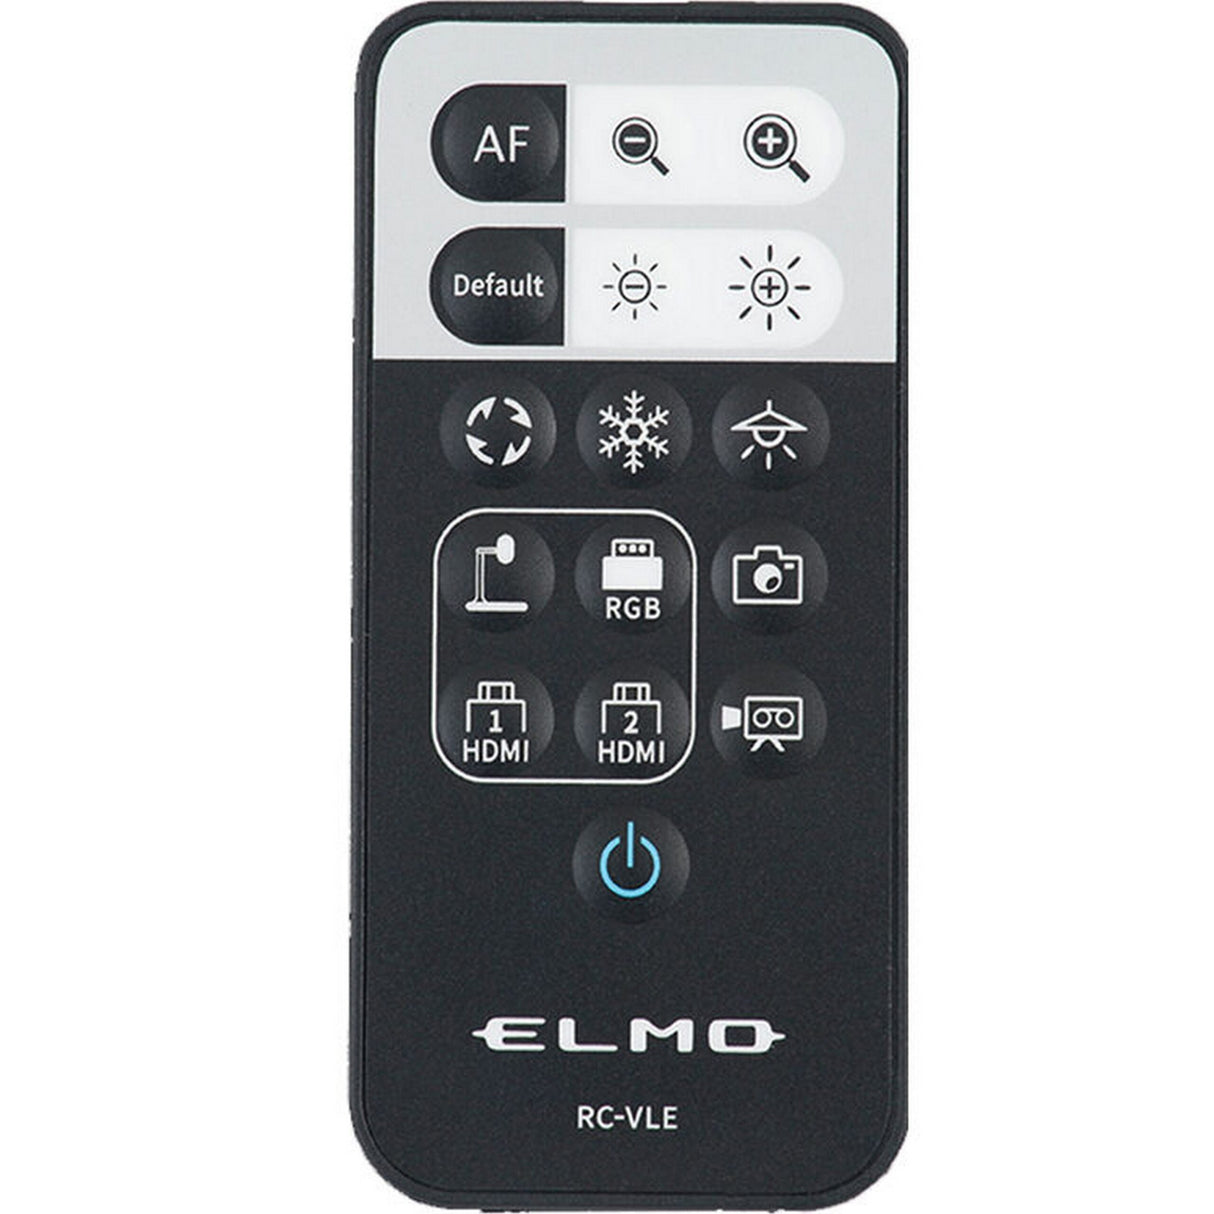 Elmo 5ZA0000384 Replacement Remote Control for PX-10, PX-10E, PX-30, and PX-30E